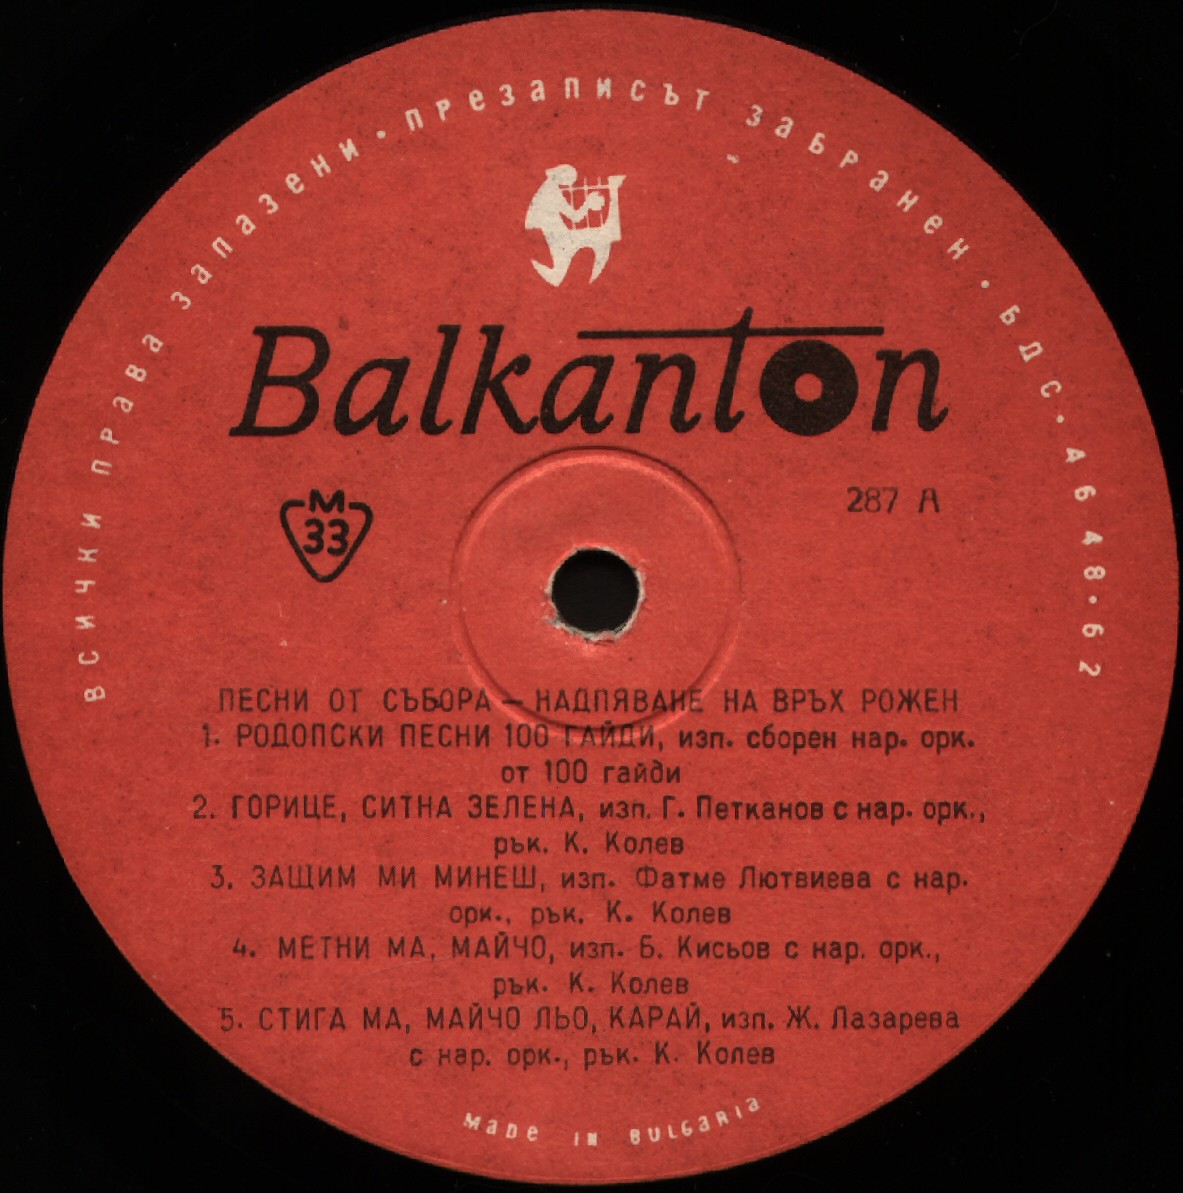 Песни от събора-надпяване в Рожен - Родопите, посветен на родопската песен, проведен през м. август 1961.